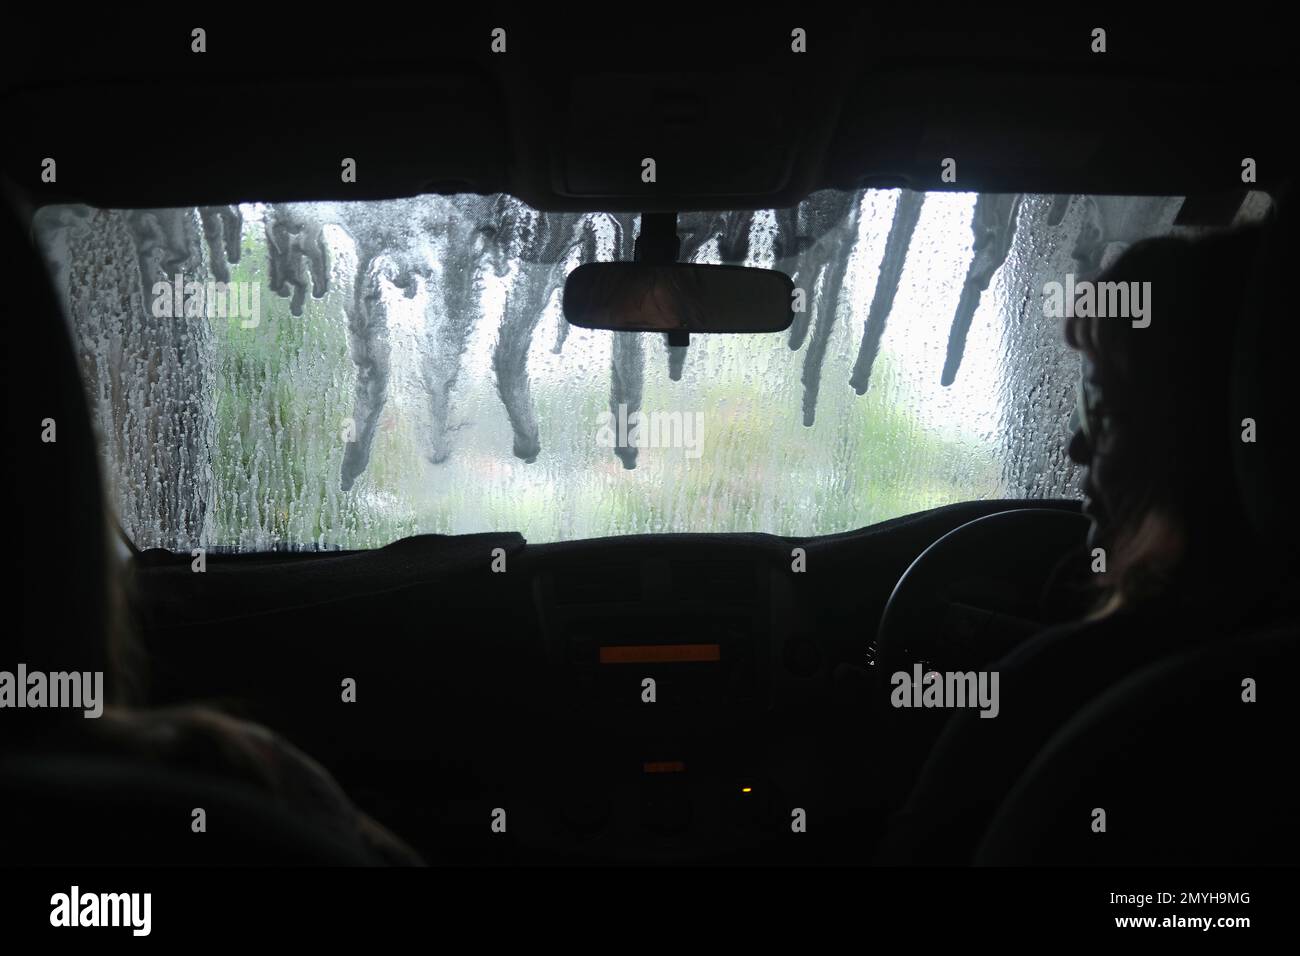 Vista desde el interior de un coche a medida que pasa por un lavado automático de coches, parabrisas húmedo. Foto de stock